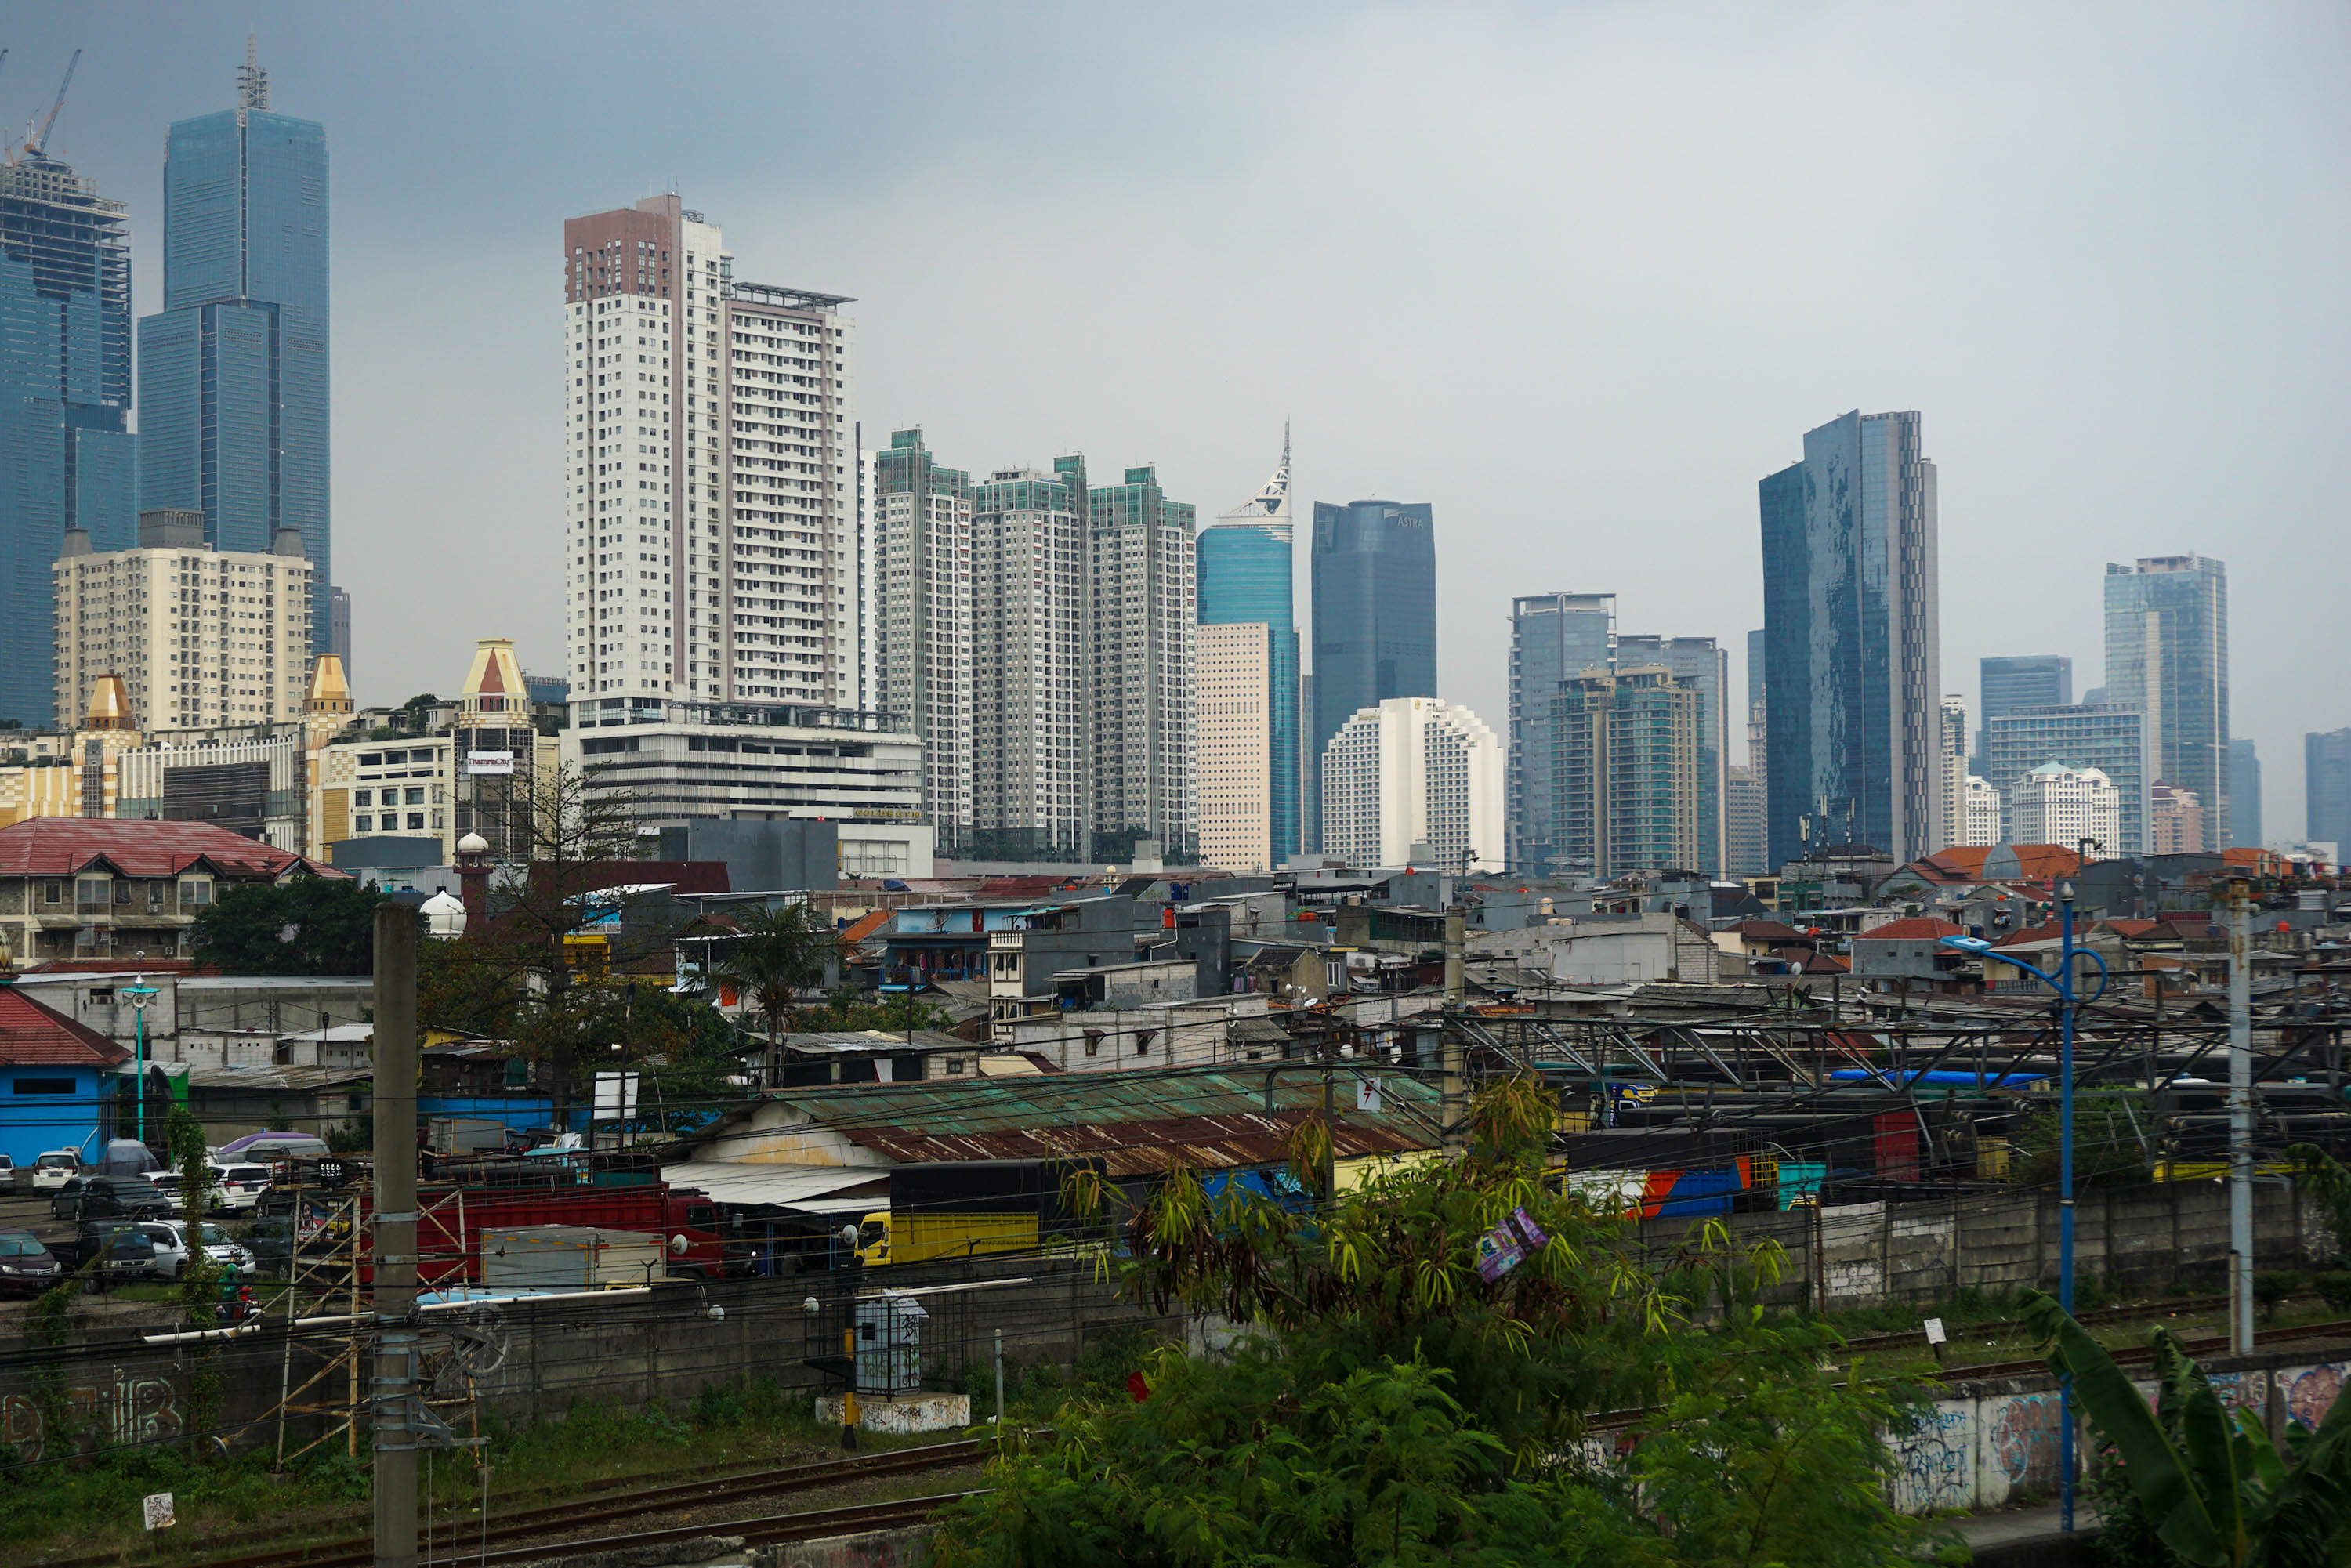 Lanskap pemukiman dengan latar gedung beetingkat di Jakarta. Foto: Ismail Pohan/TrenAsia